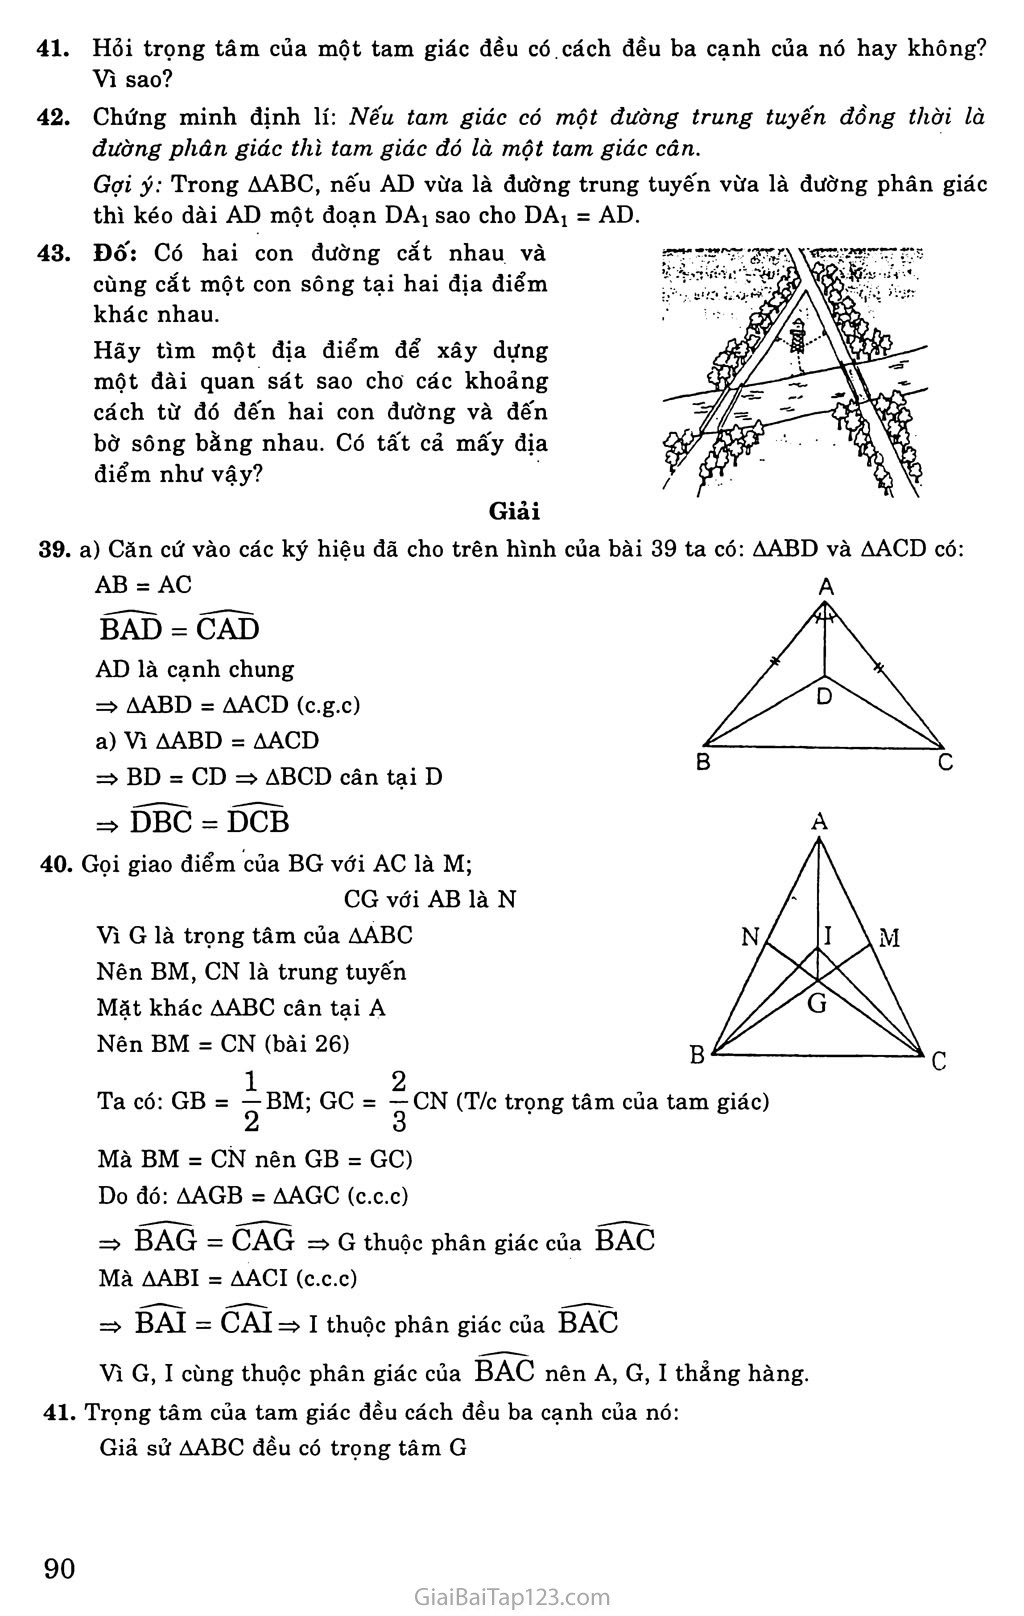 Bài 6. Tính chất ba đường phân giác của tam giác trang 4